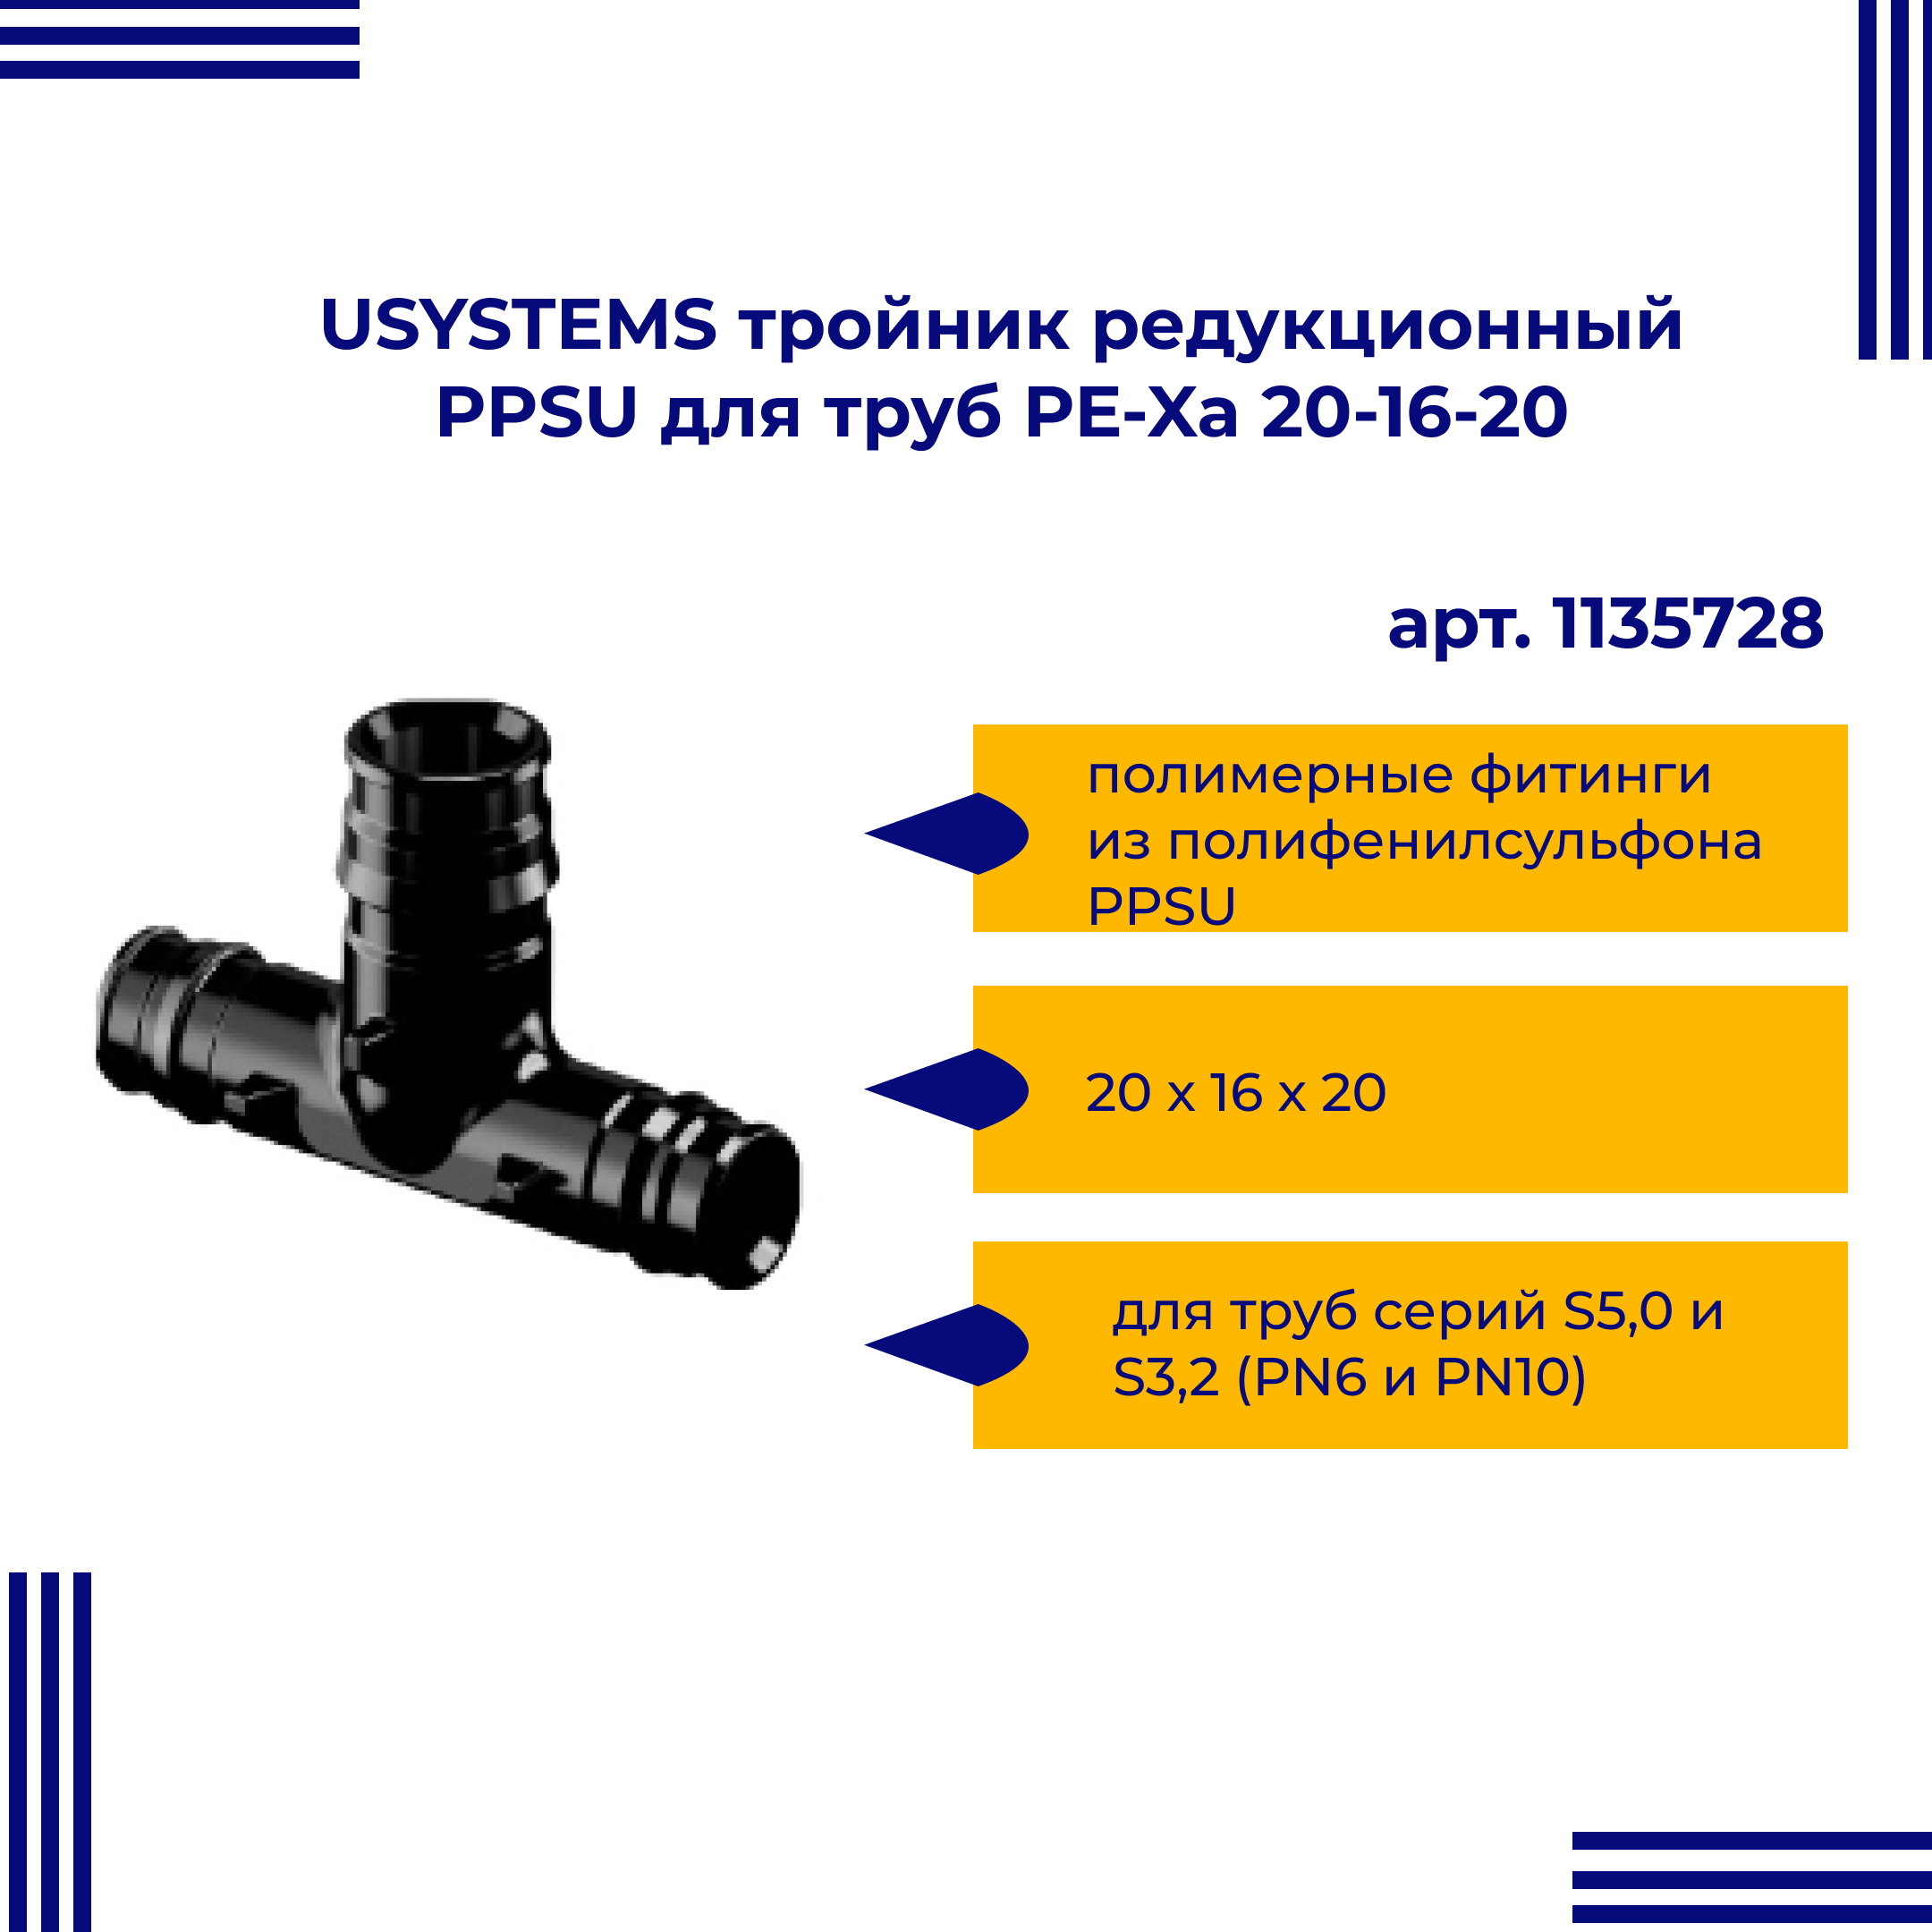 Тройник PPSU USYSTEMS редукционный для труб PE-Xa 20-16-20 1135728 двойная водорозетка для труб из сшитого полиэтилена pex qe one plus